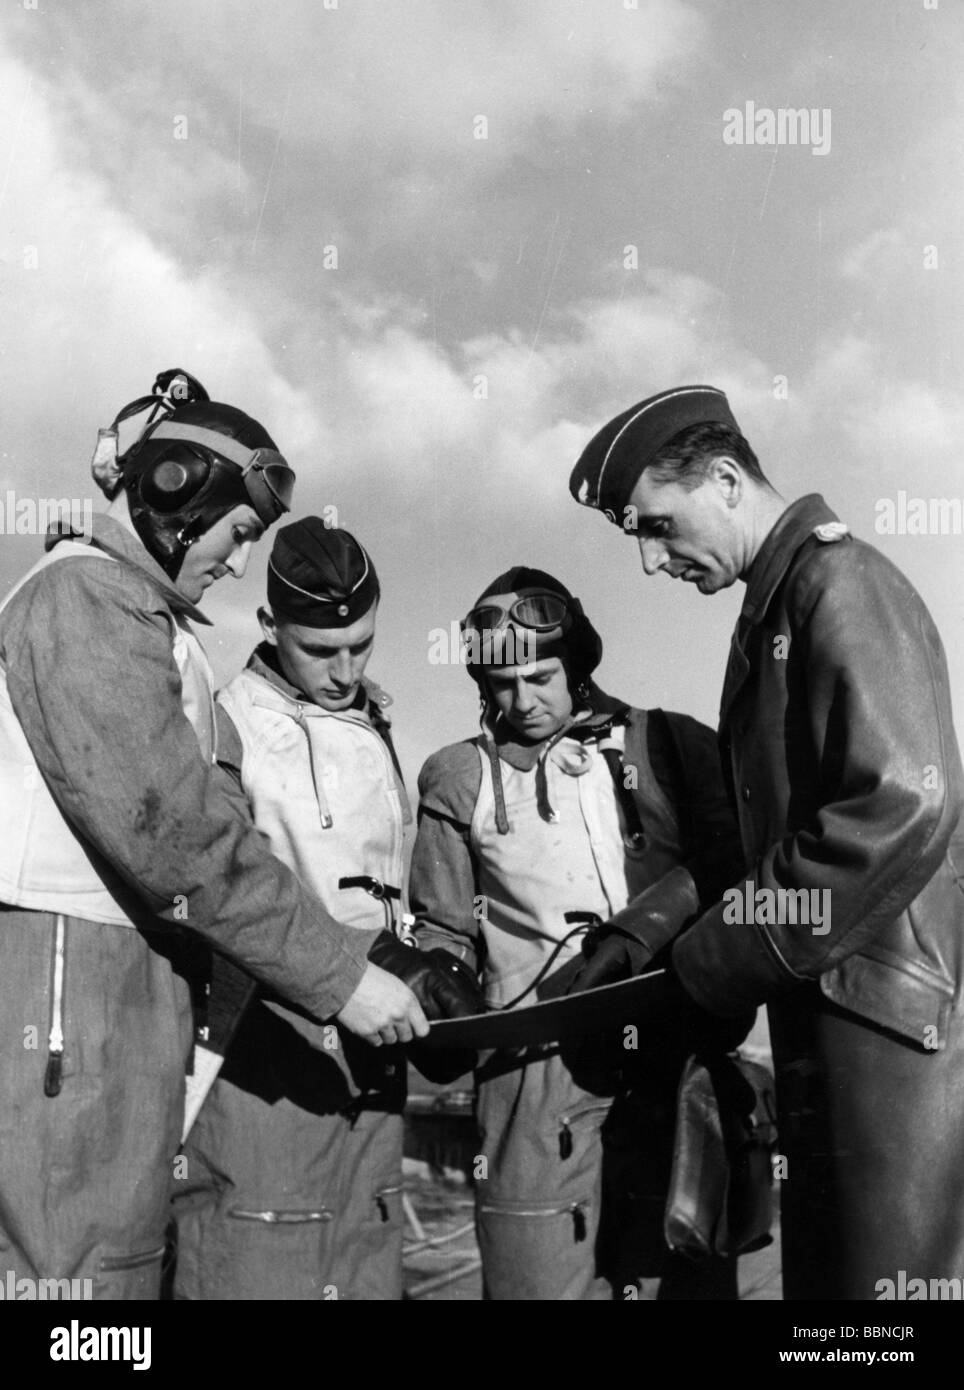 Événements, seconde Guerre mondiale / seconde Guerre mondiale, guerre aérienne, personnes, chef d'escadron Luftwaffe donnant les dernières instructions avant une mission, vers 1940, Banque D'Images